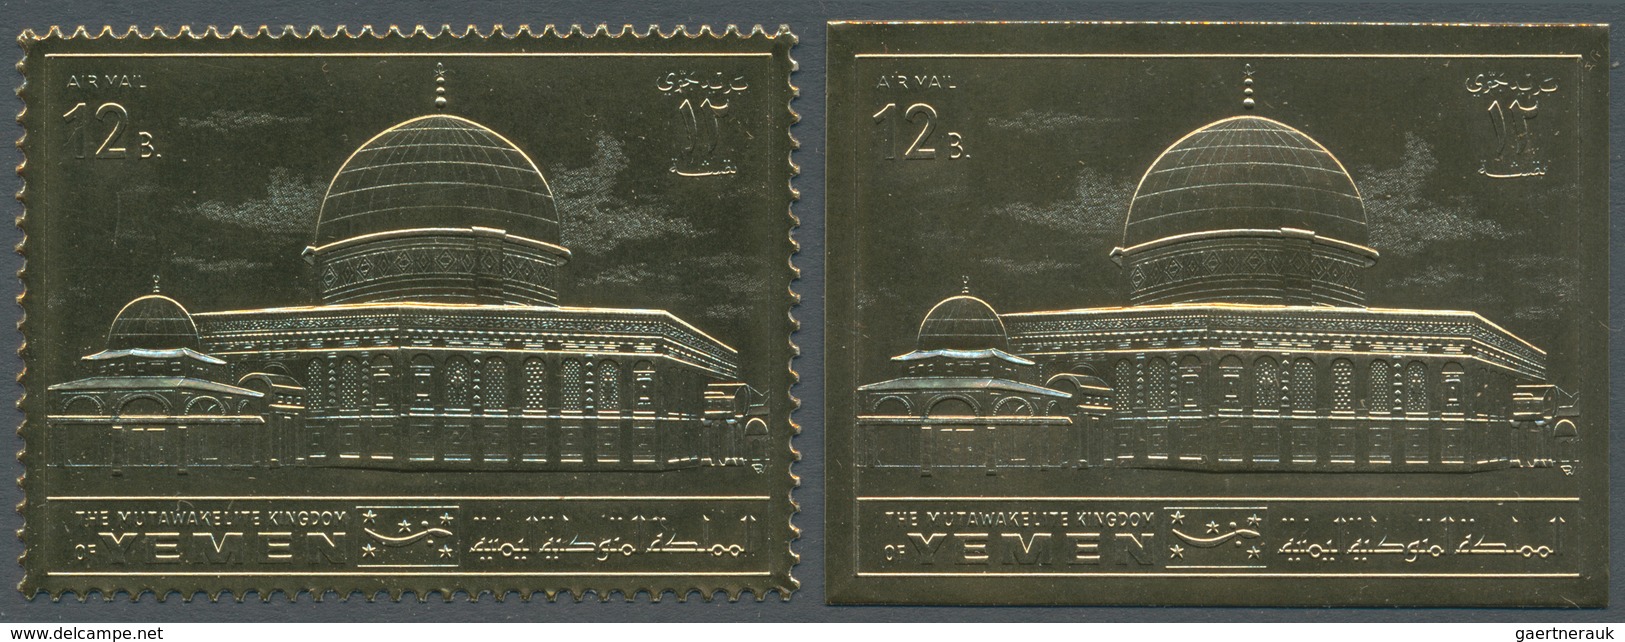 Jemen - Königreich: 1969, Holy Sites 'Dome Of The Rock In Jerusalem' Gold Foil Stamps Investment Lot - Yémen